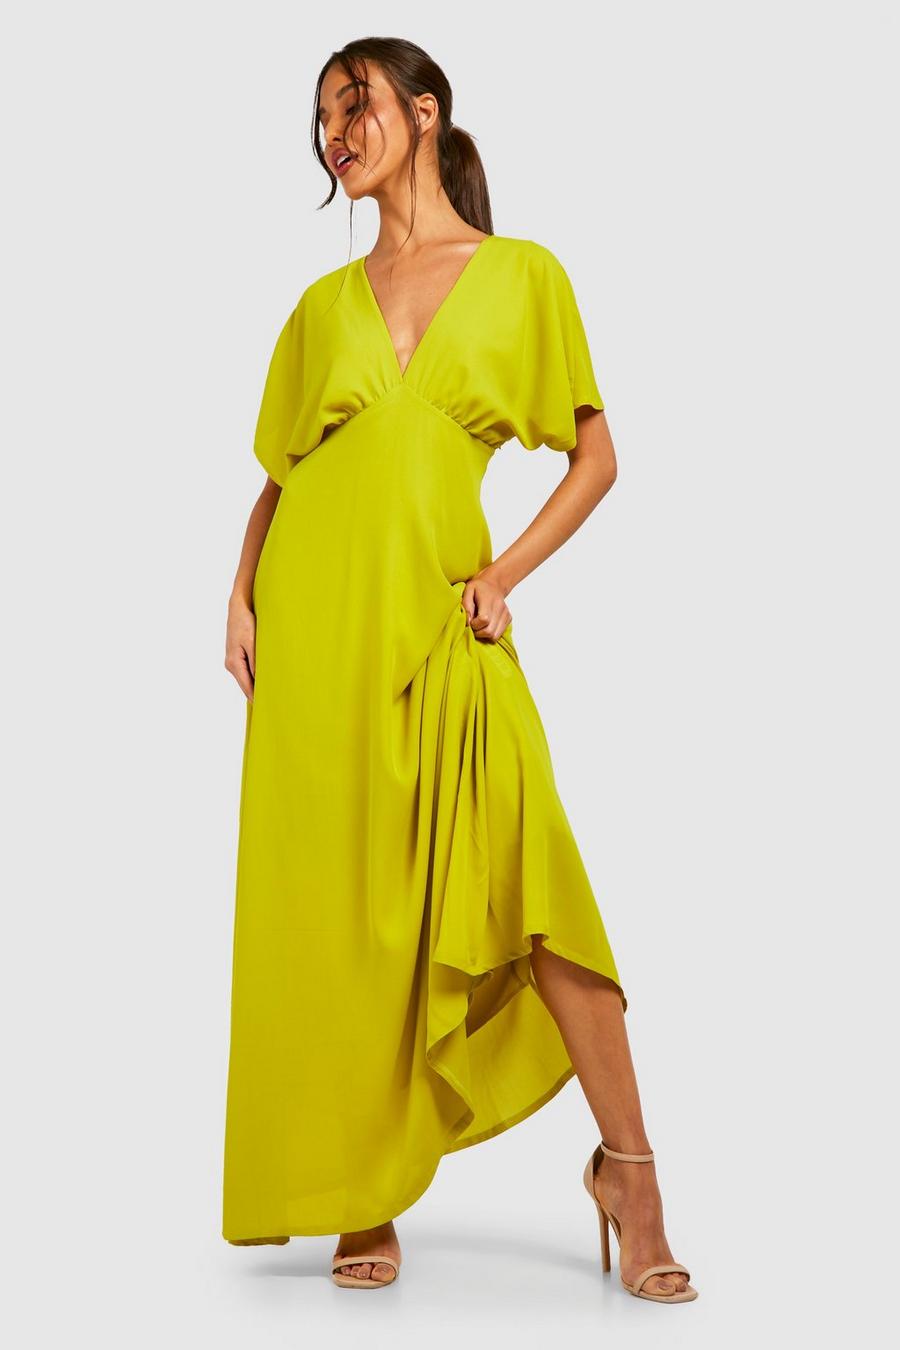 Chartreuse yellow Chiffon Batwing Ruched Maxi Dress